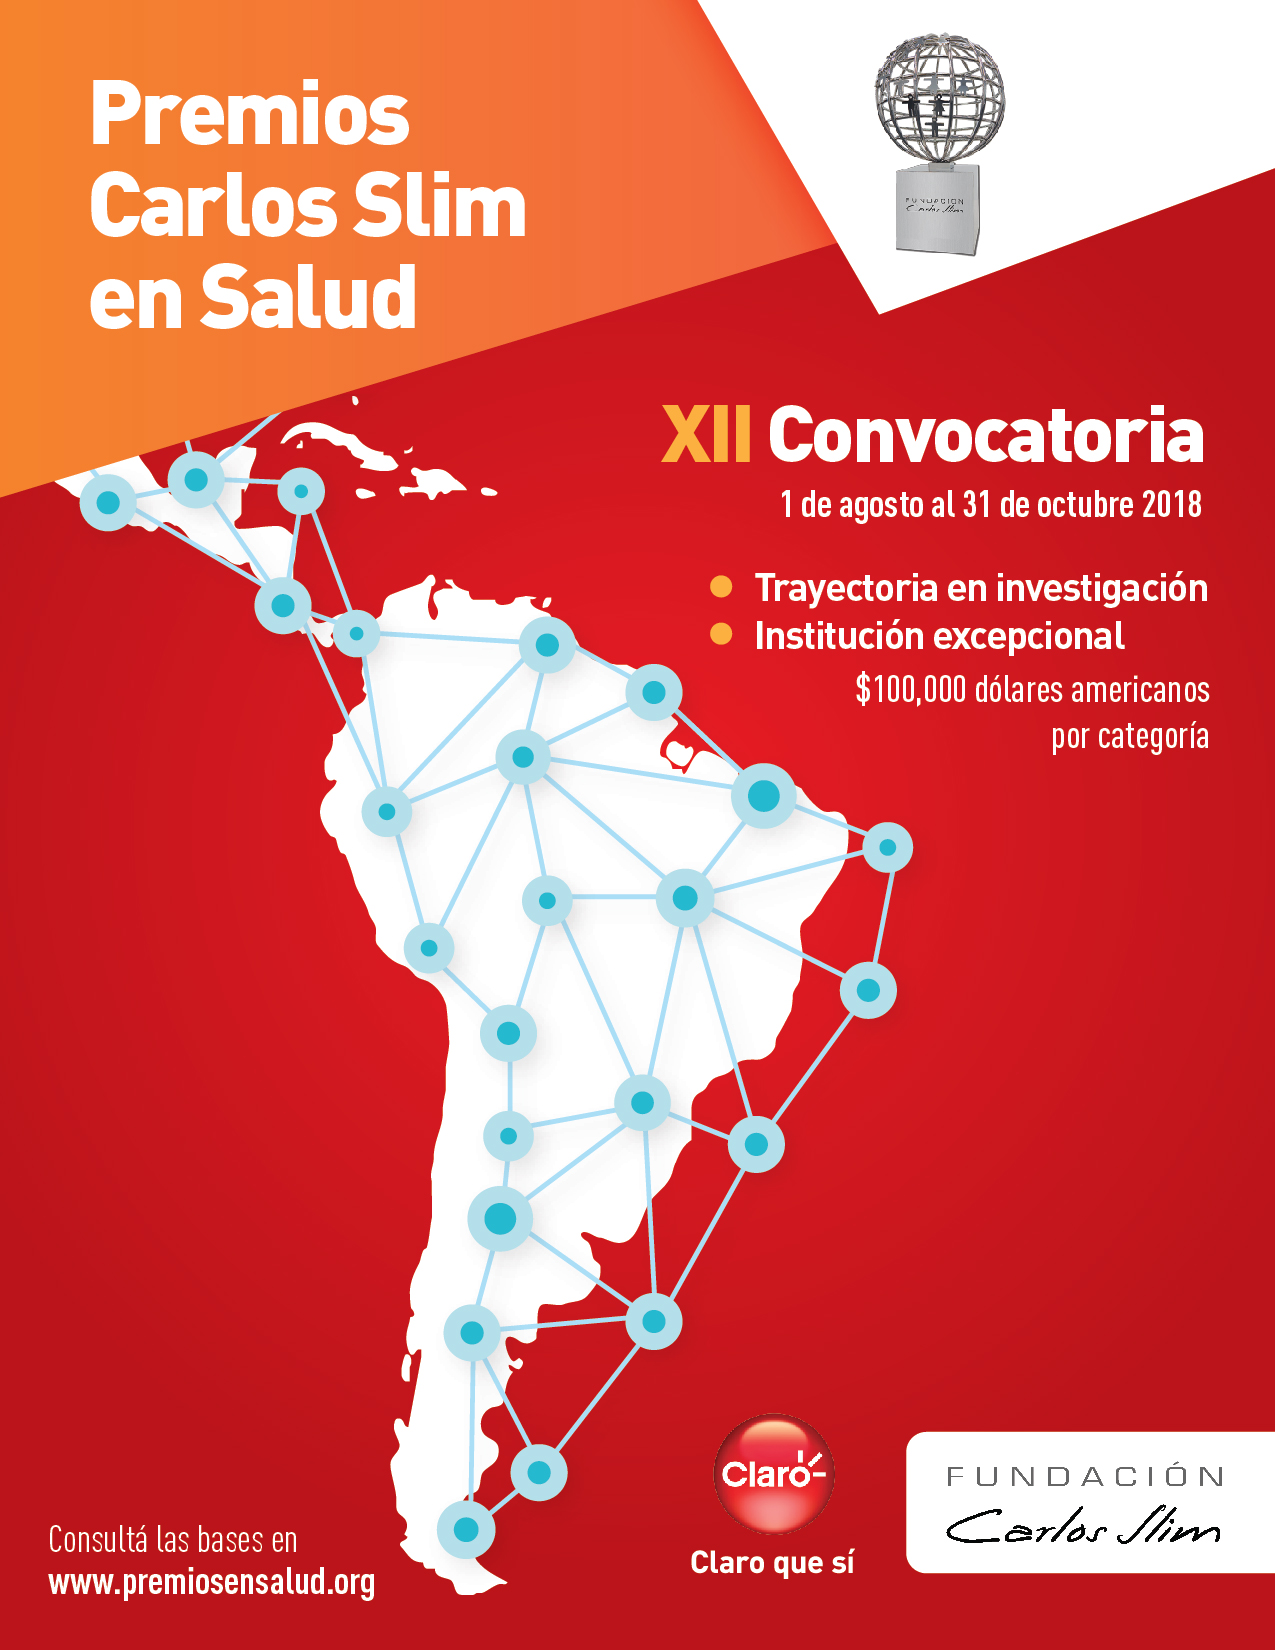 Fundación Carlos Slim convoca a participar en Premios Carlos Slim en Salud 2019